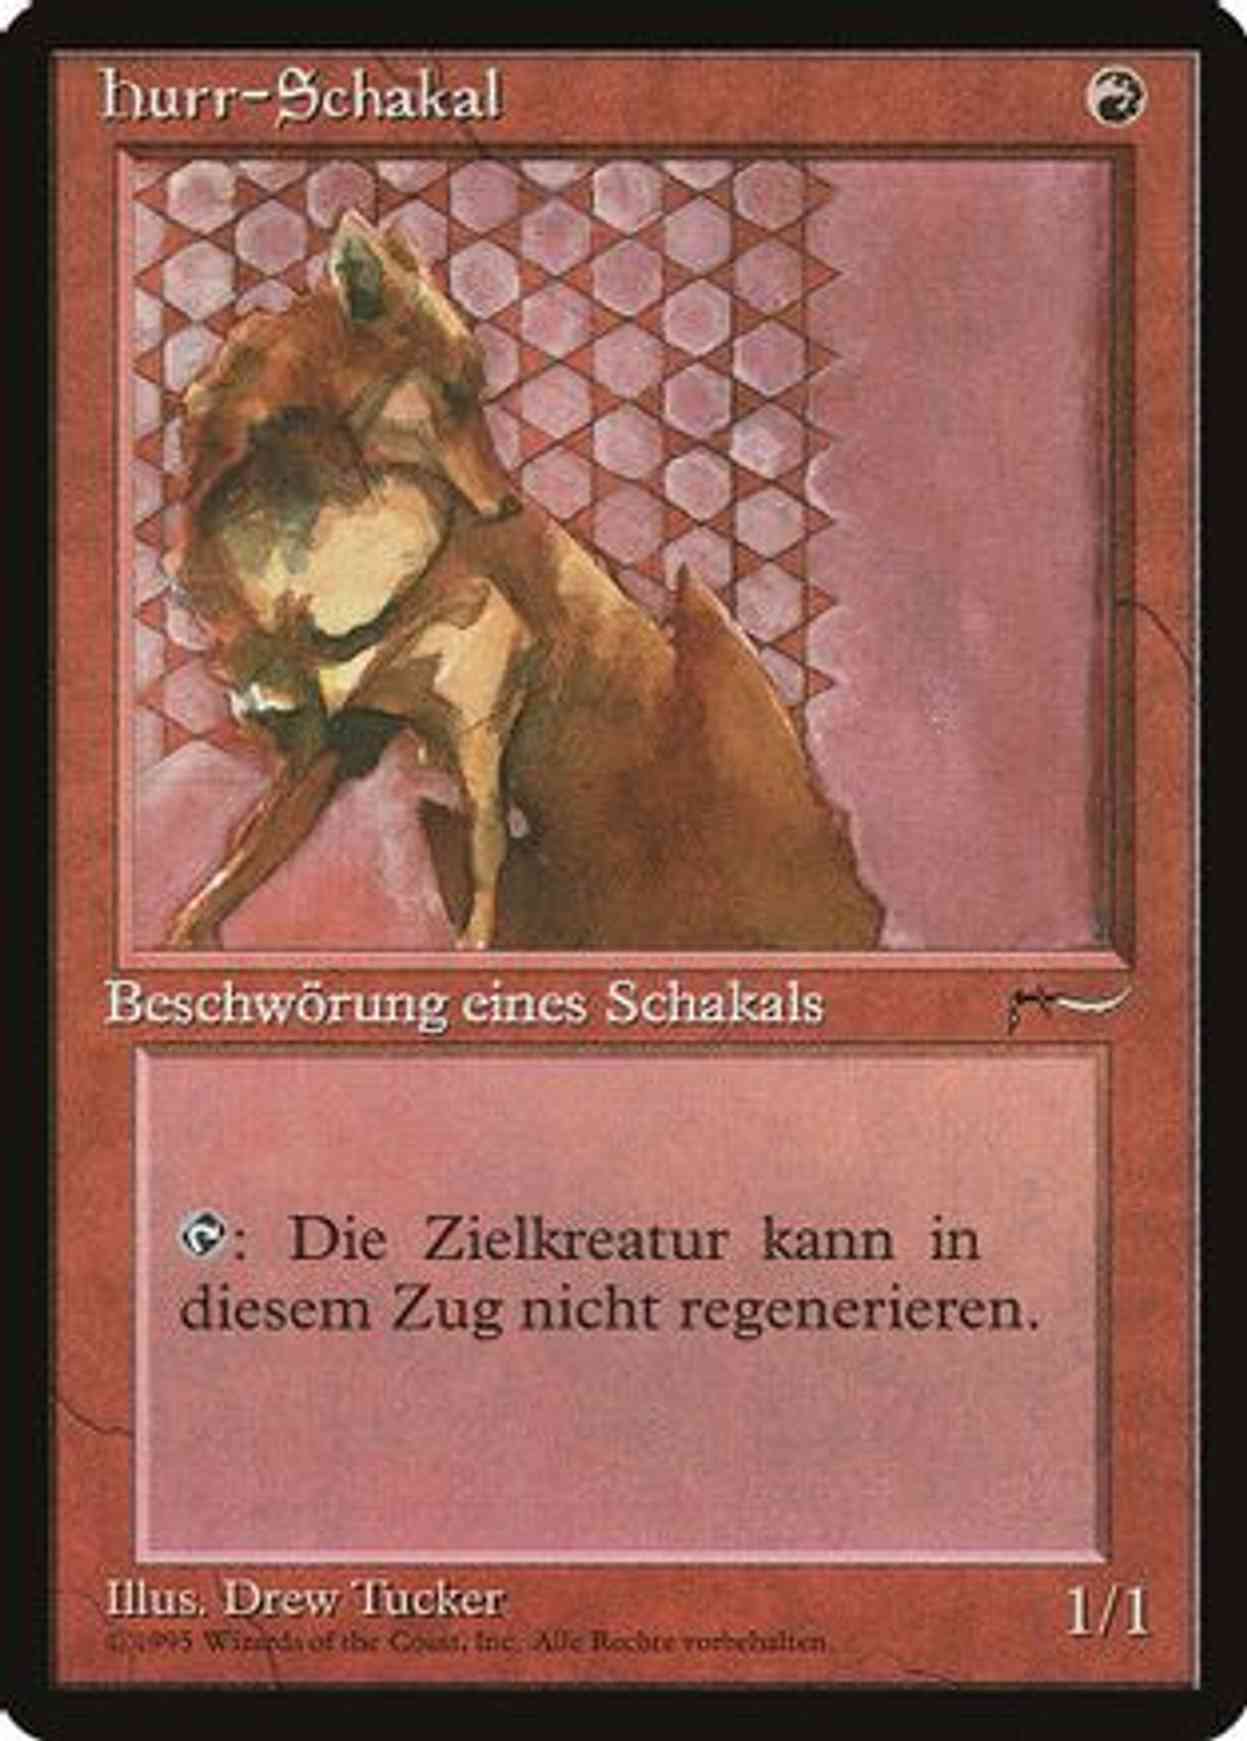 Hurr Jackal (German) - "hurr-Schakal" magic card front